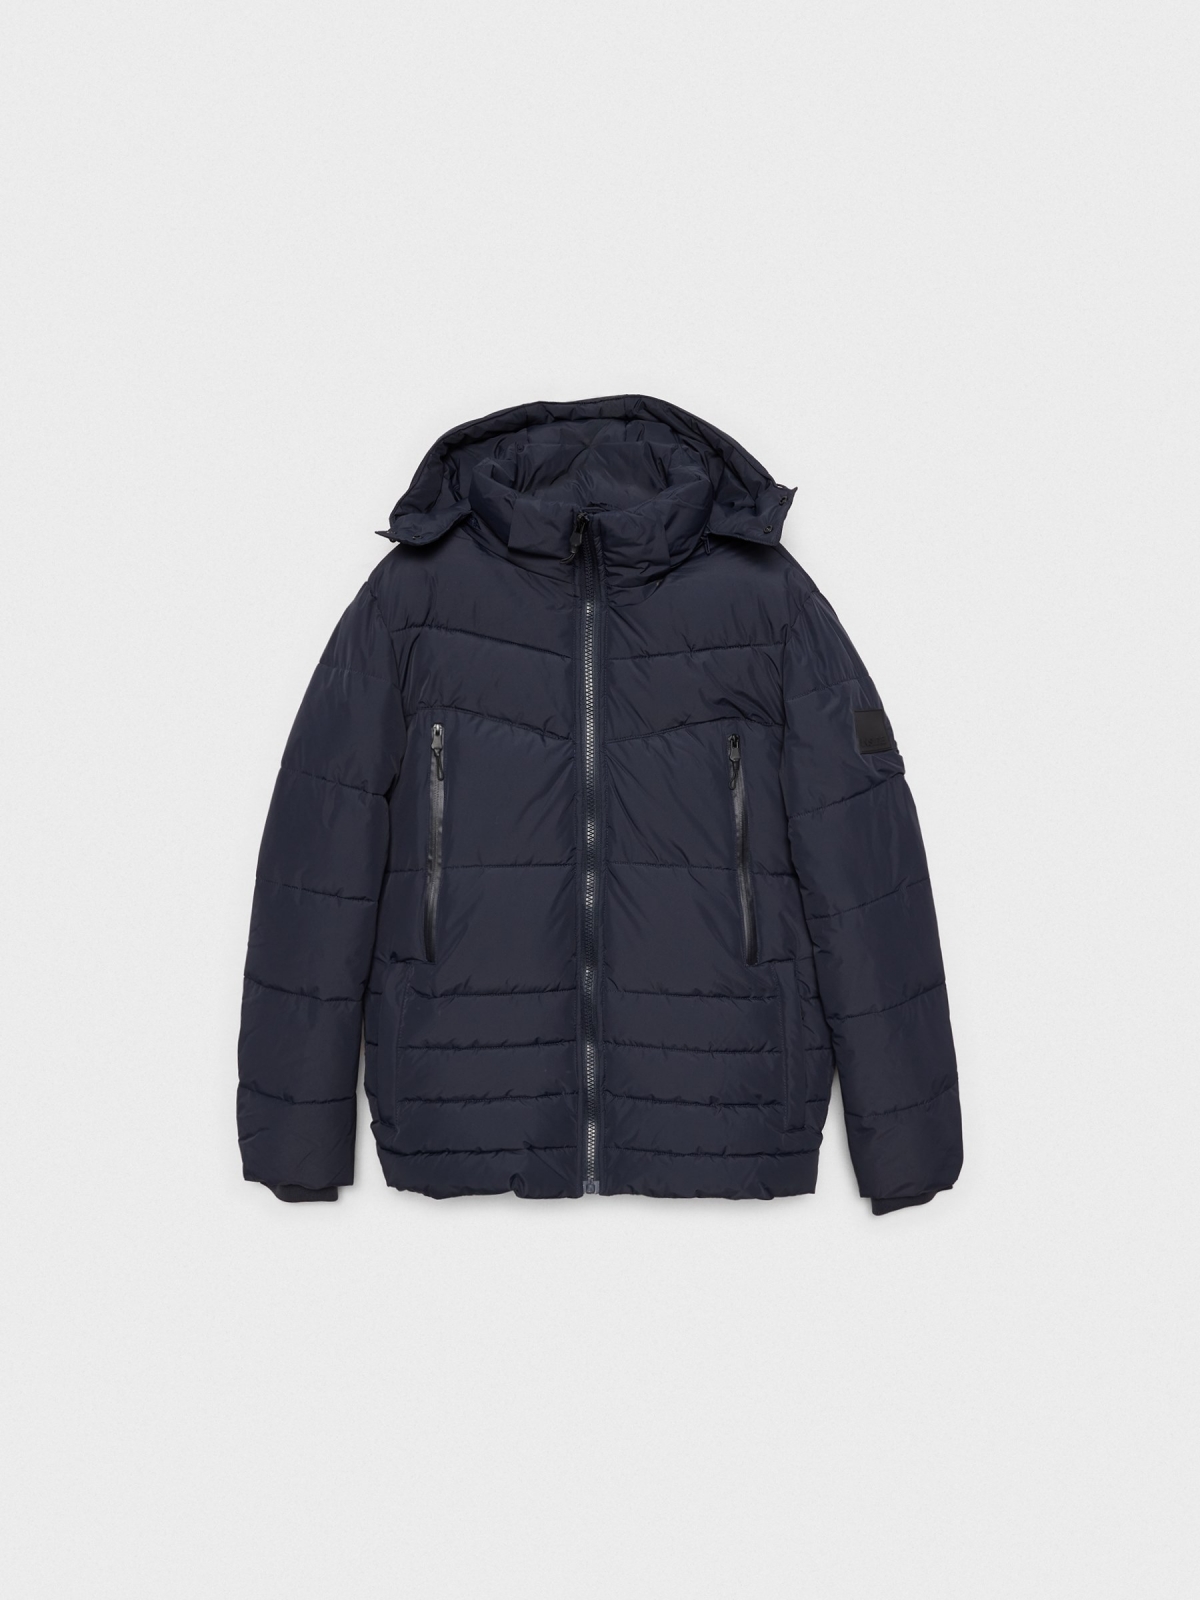  Nylon coat with zippered pockets blue